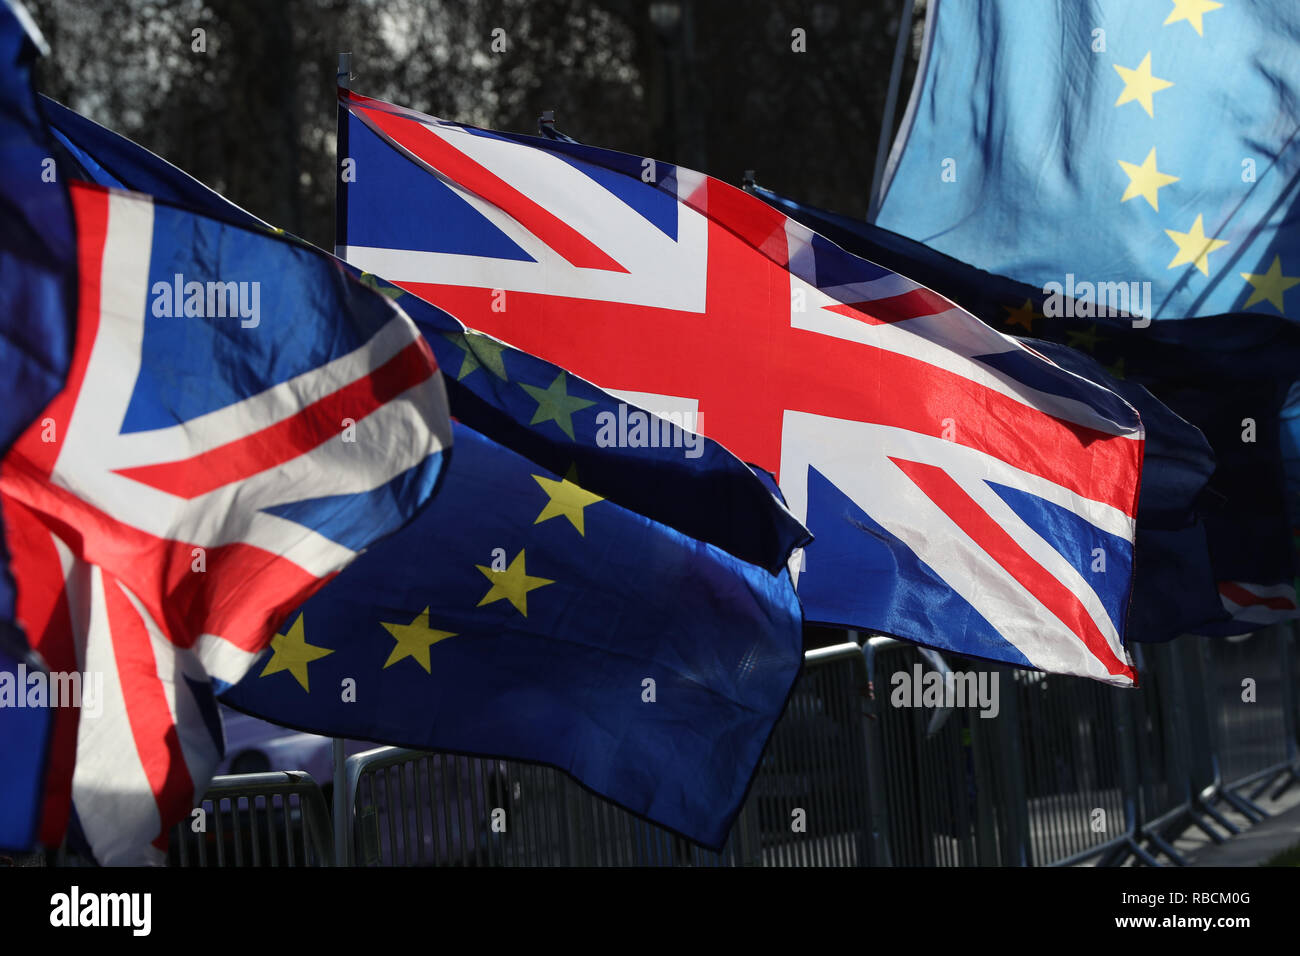 Le drapeau européen et le drapeau de l'Union à l'extérieur du Parlement de Londres, que la police de la région ont été informés de manière appropriée "d'intervenir" si le droit est rompu après le député conservateur Anna Soubry les a accusés d'abus ignorant lancées contre les hommes politiques et les journalistes. Banque D'Images